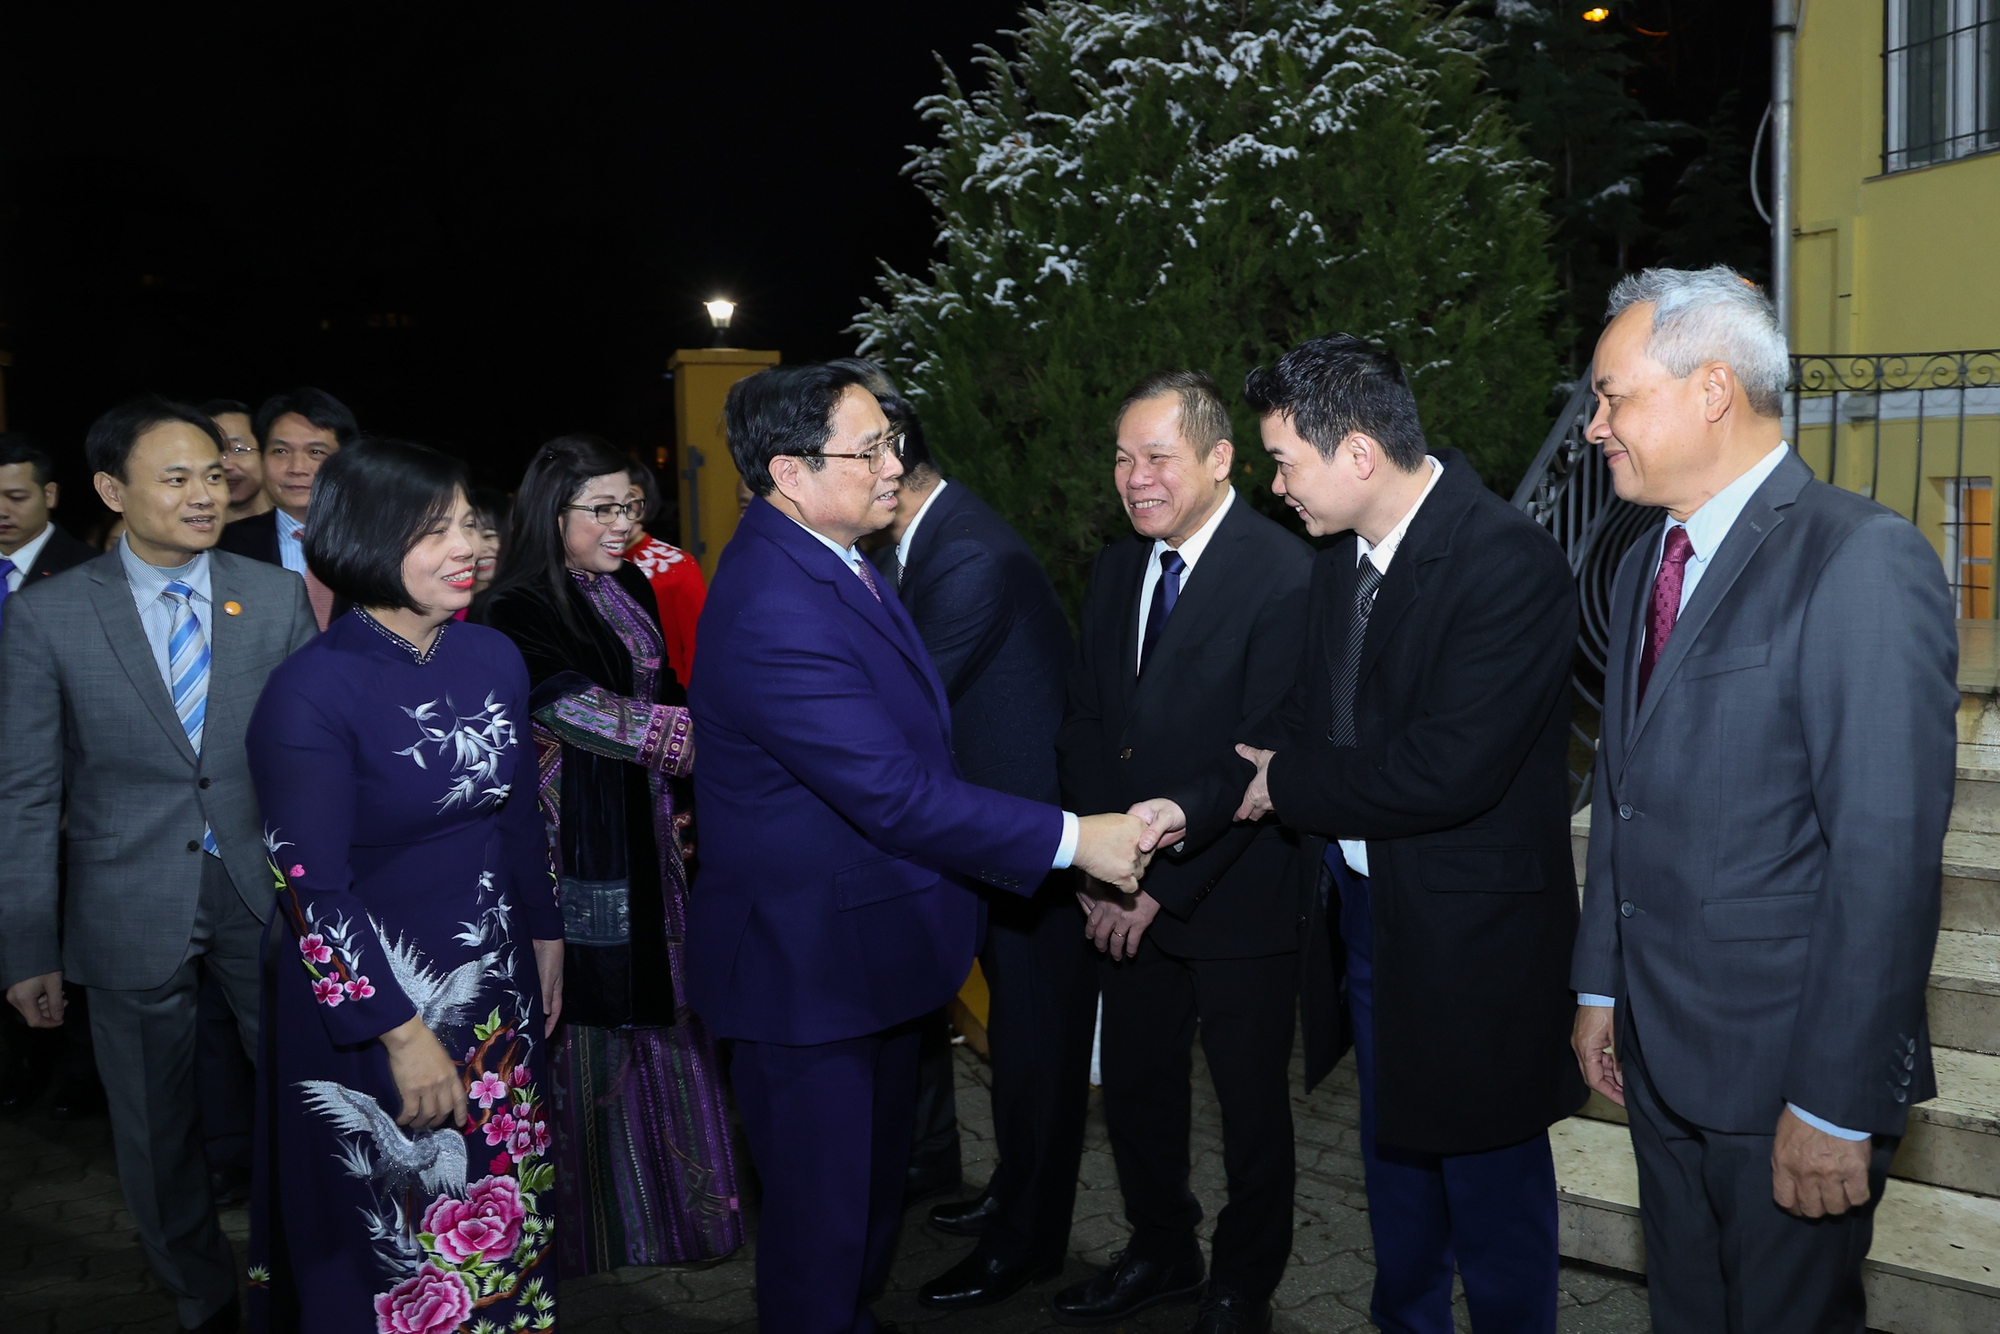 Thủ tướng và Phu nhân tới thăm, gặp gỡ cán bộ, nhân viên Đại sứ quán và đại diện cộng đồng người Việt Nam tại Hungary - Ảnh: VGP/Nhật Bắc